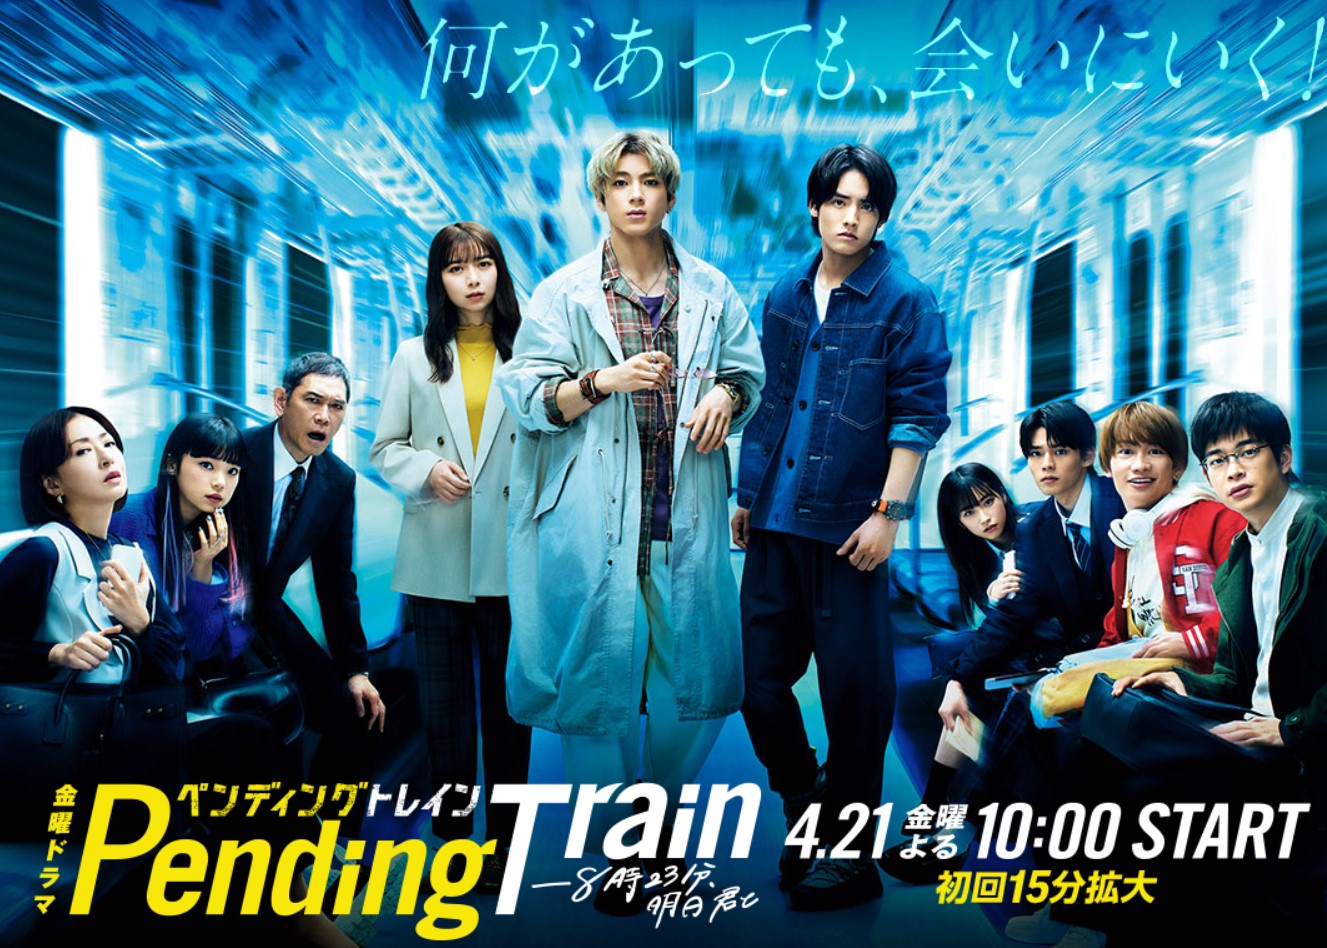 越谷市でTBSドラマ「ペンディングトレイン」の撮影が行われたみたい 放送は4月21日(金)【がやてっく話題】